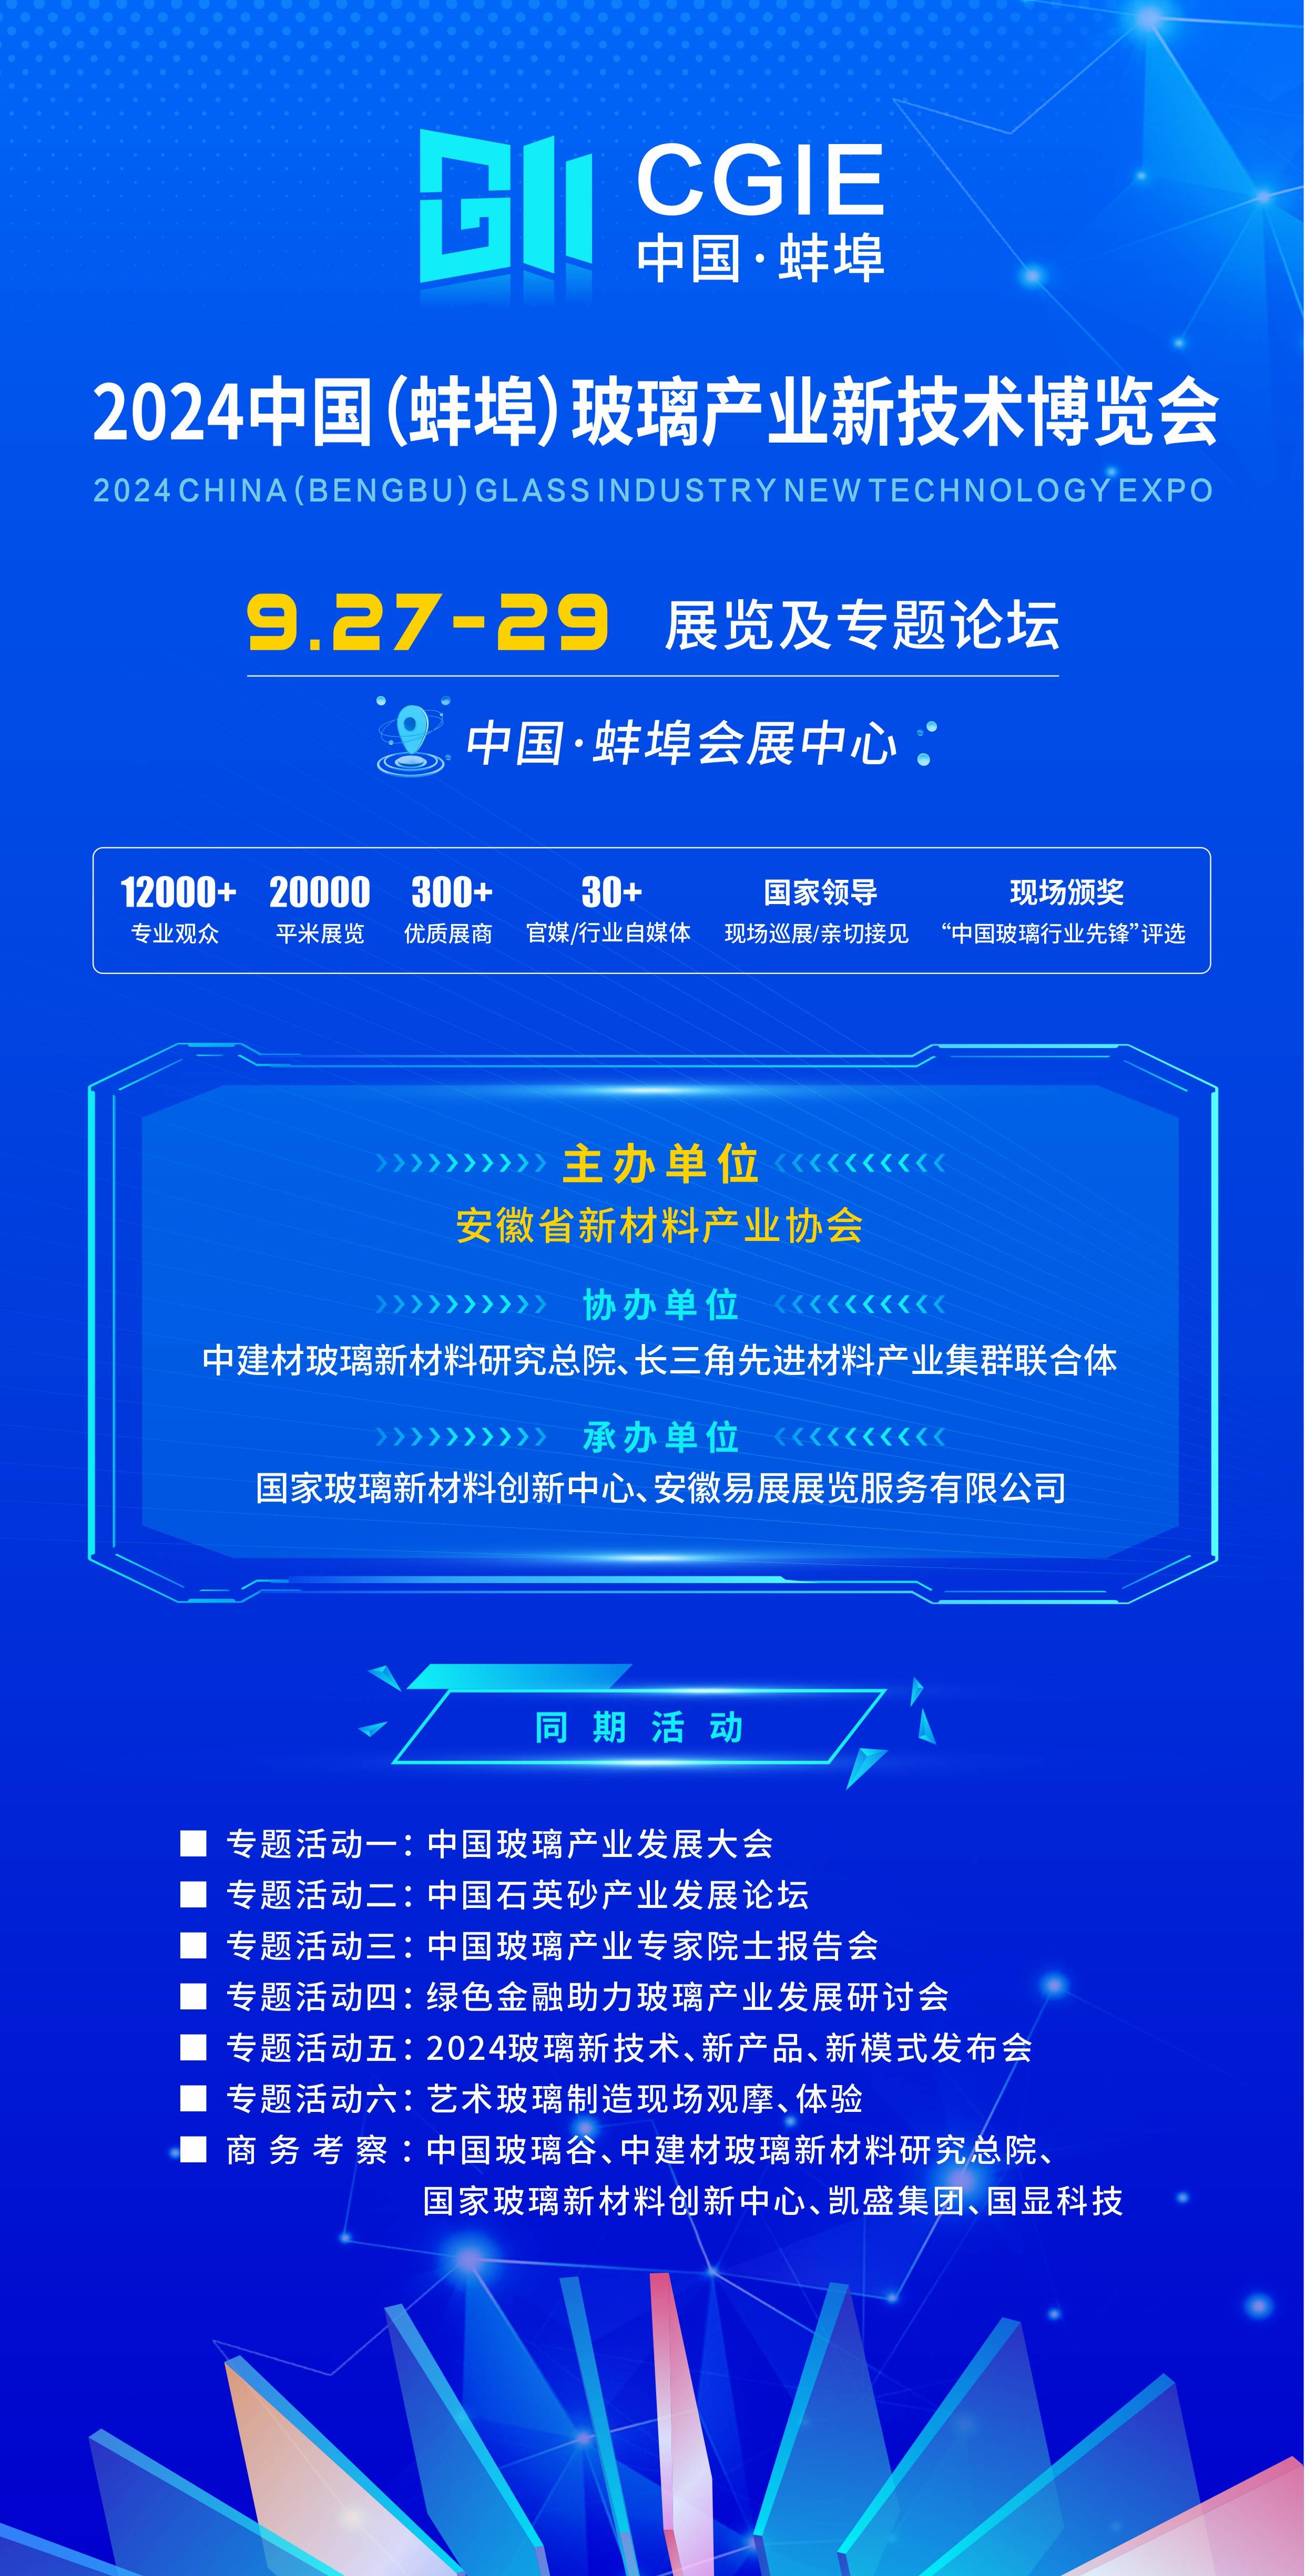 蚌埠玻璃展祝贺中建国际工程集团荣登工赋链主培育企业名单!